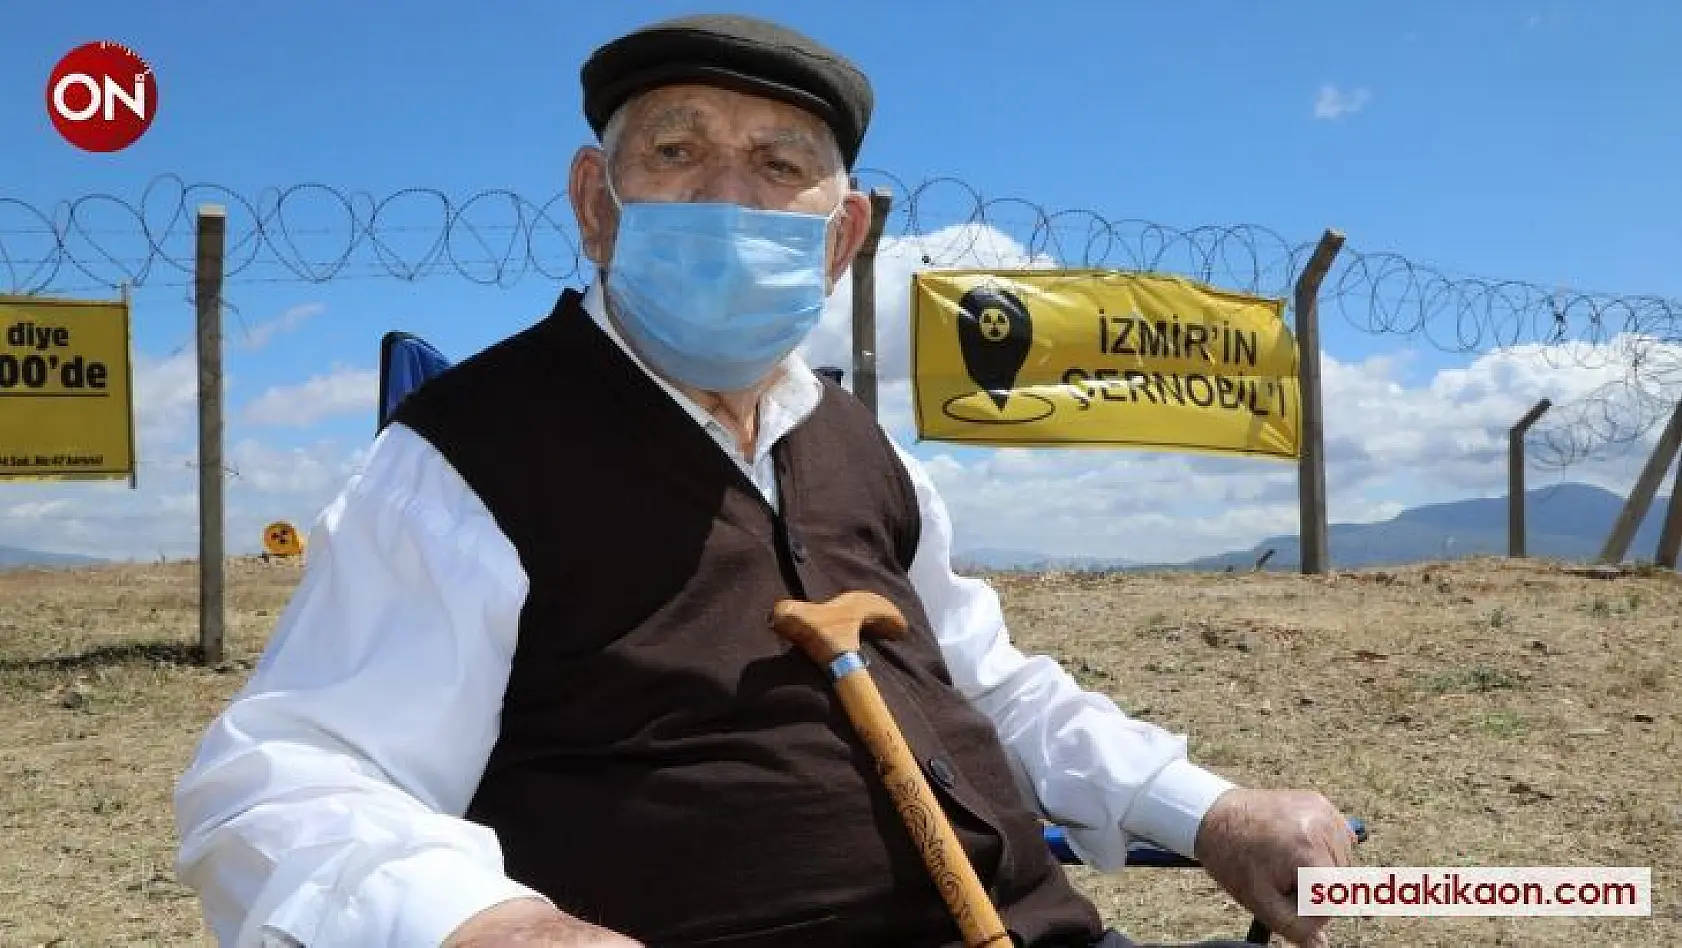 İzmir'in Çernobiline karşı 93'lük Mehmet Dede eylemde